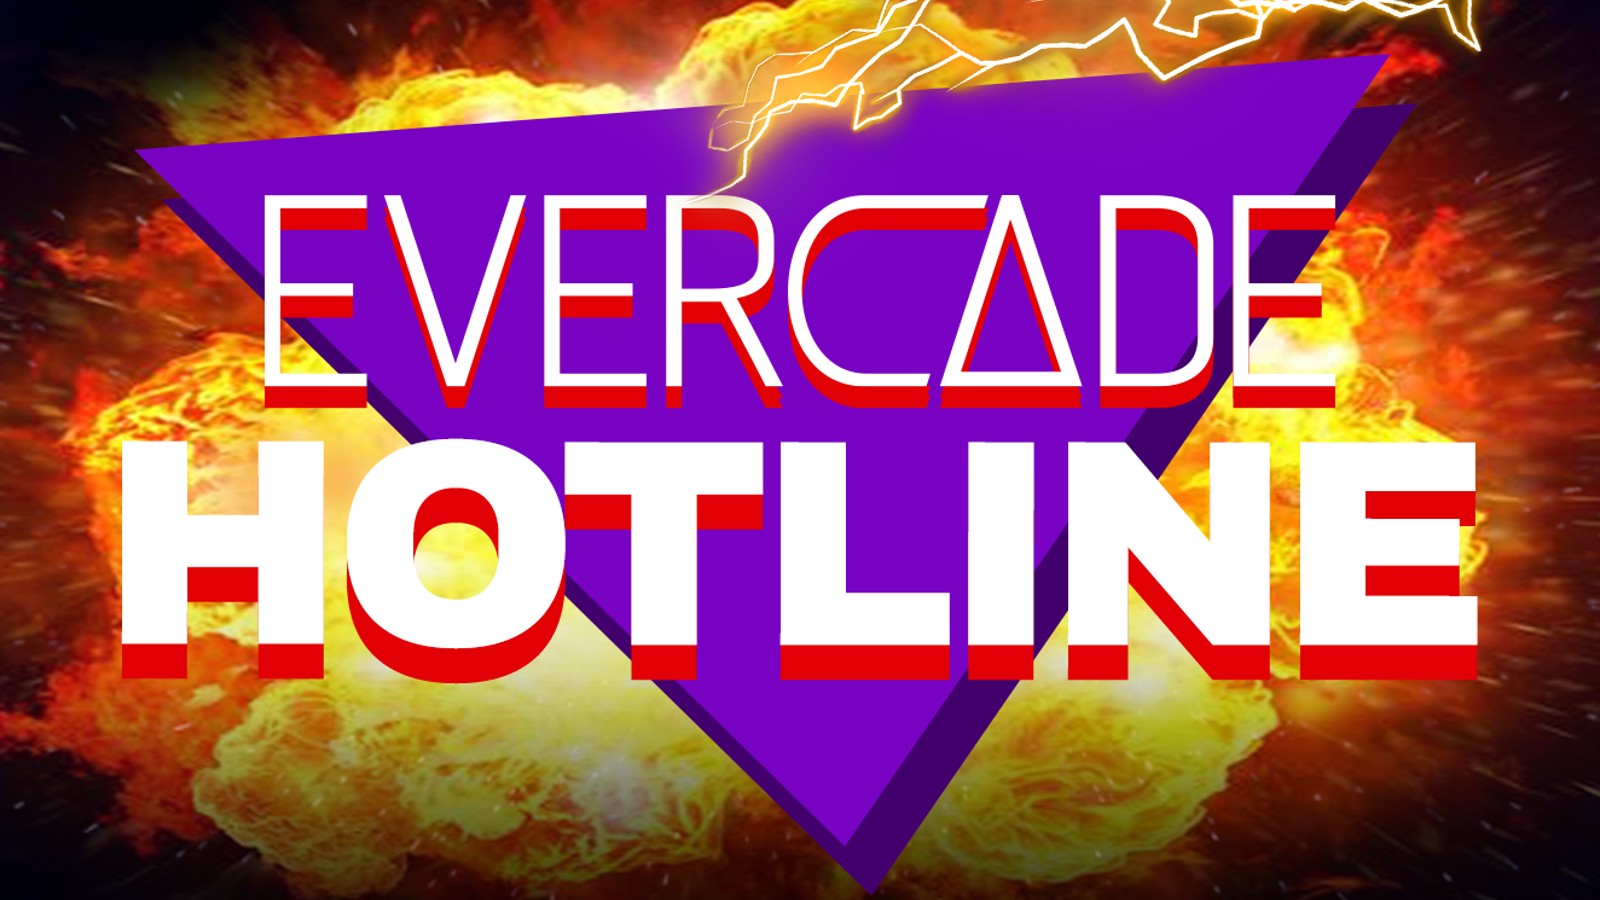 Evercade Hotline